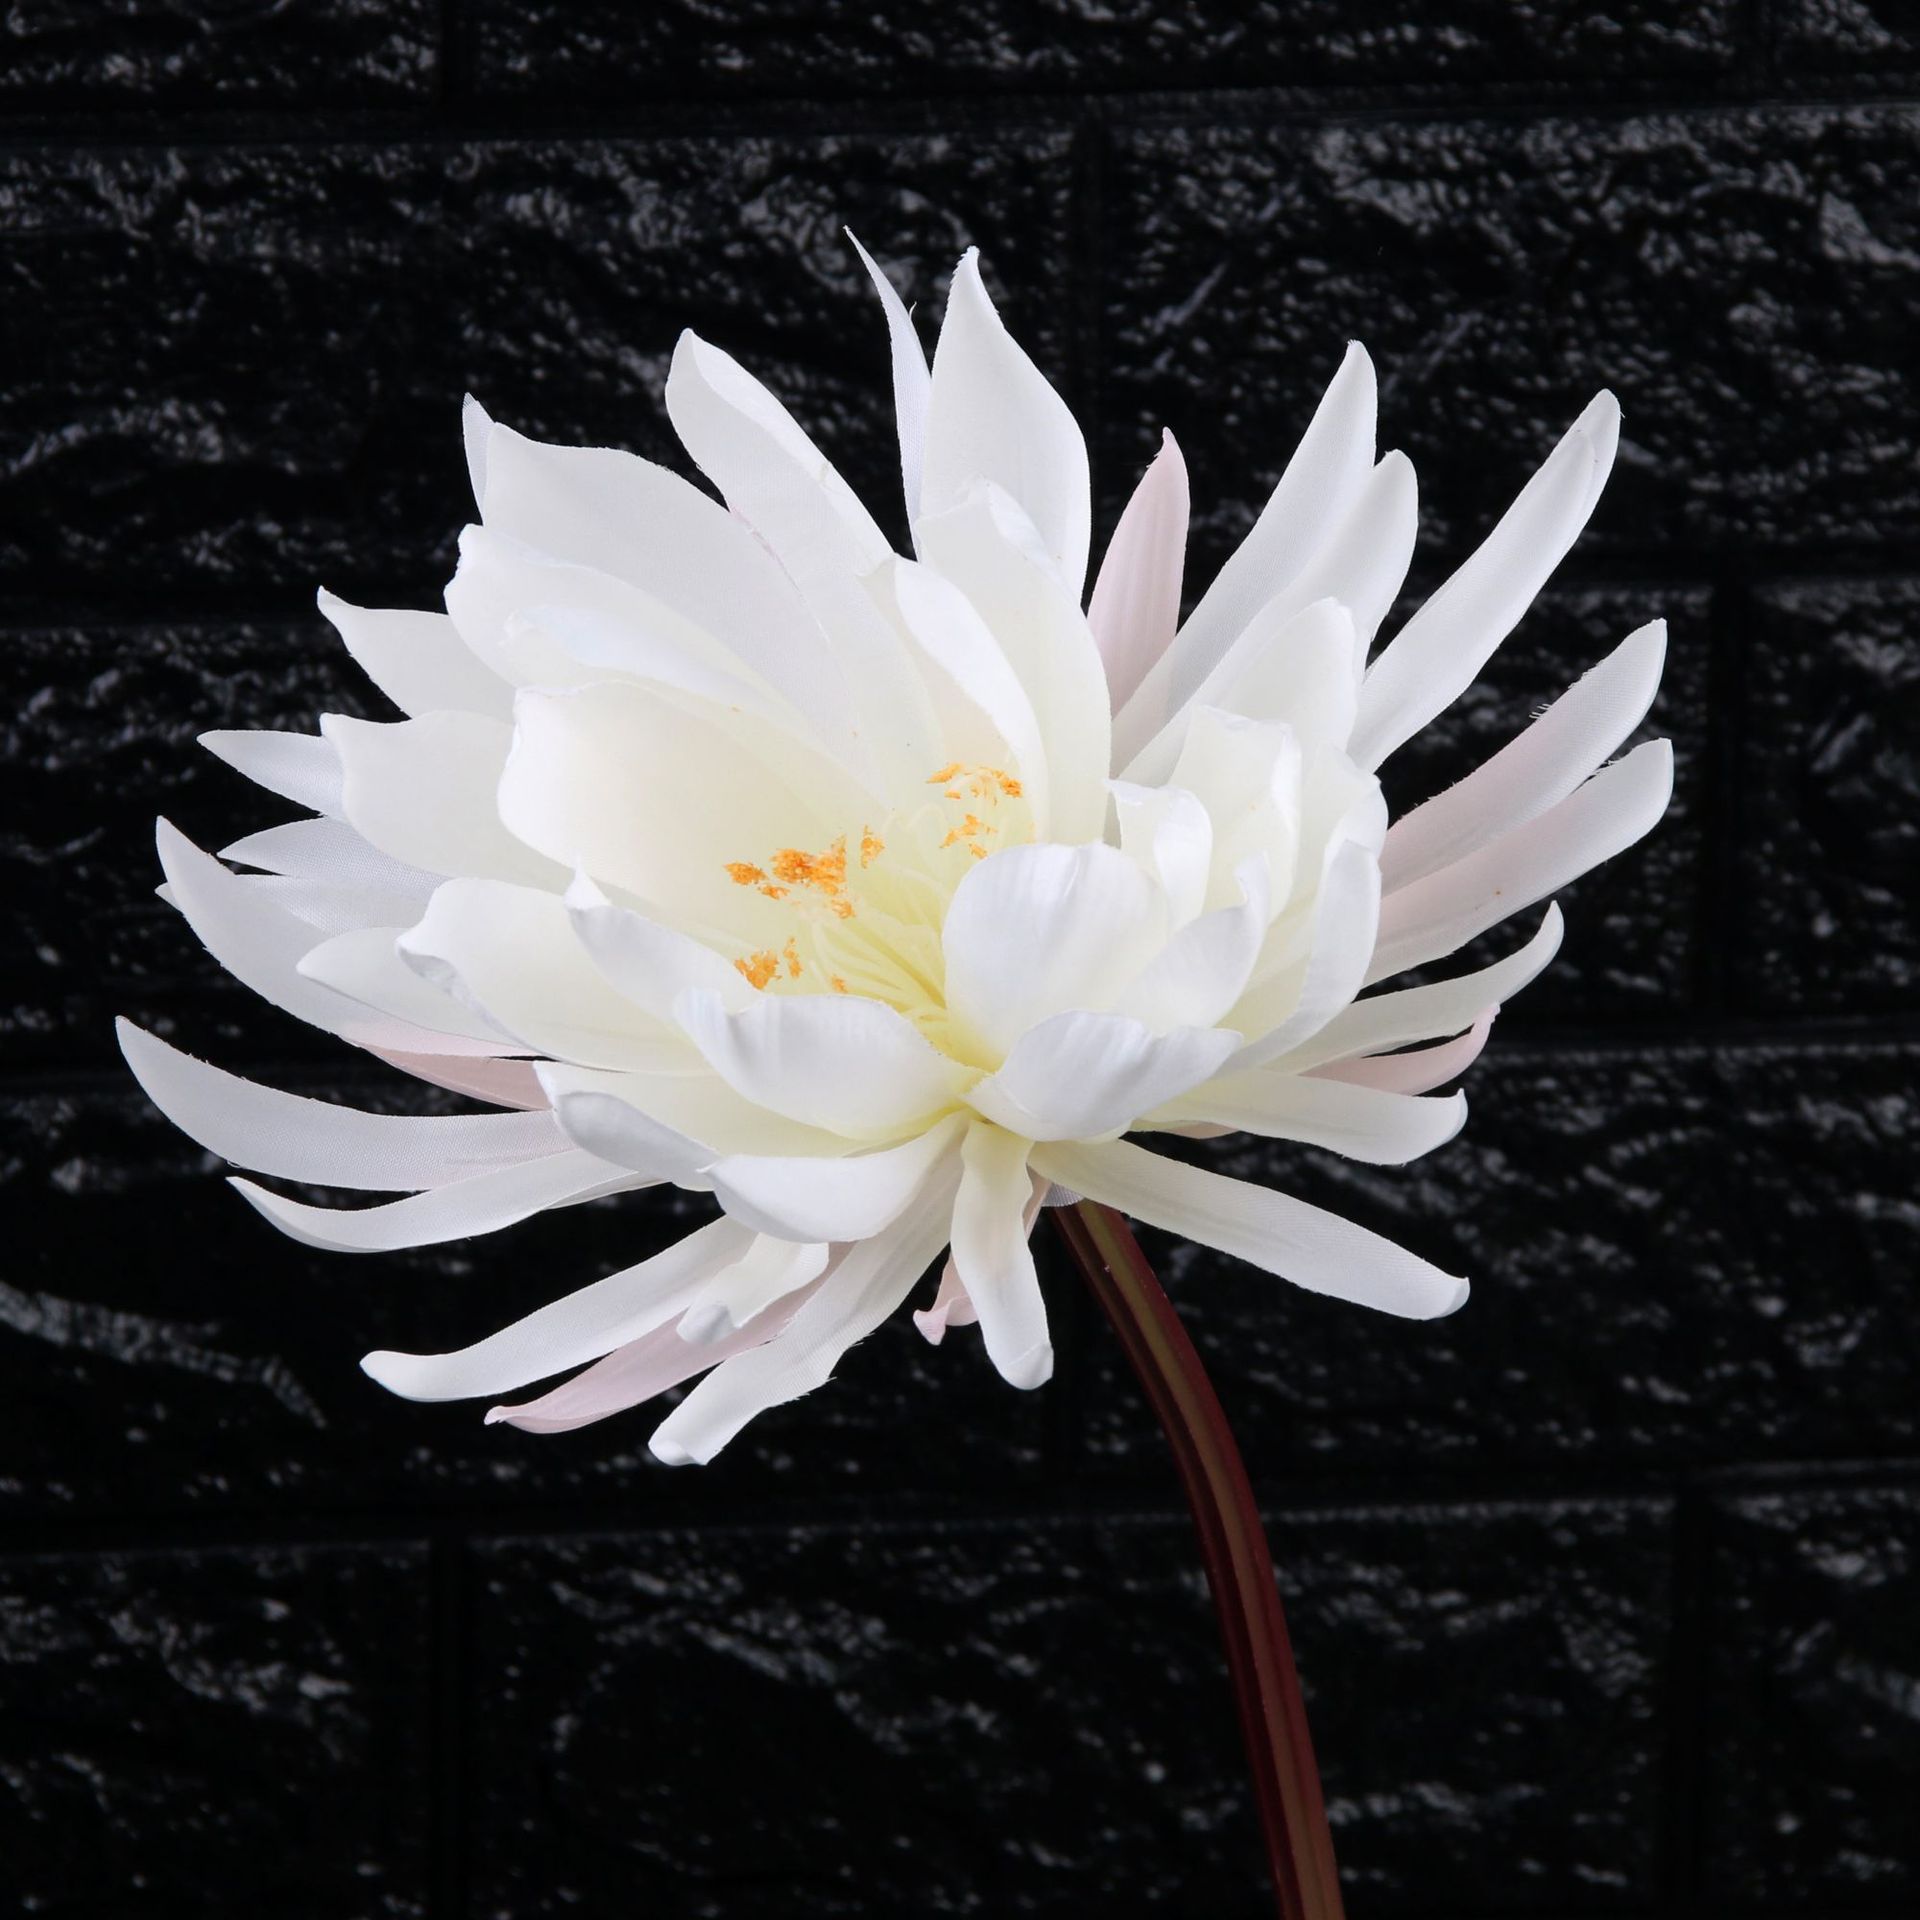 Ảnh hoa Sen white nền tối vô cùng đẹp